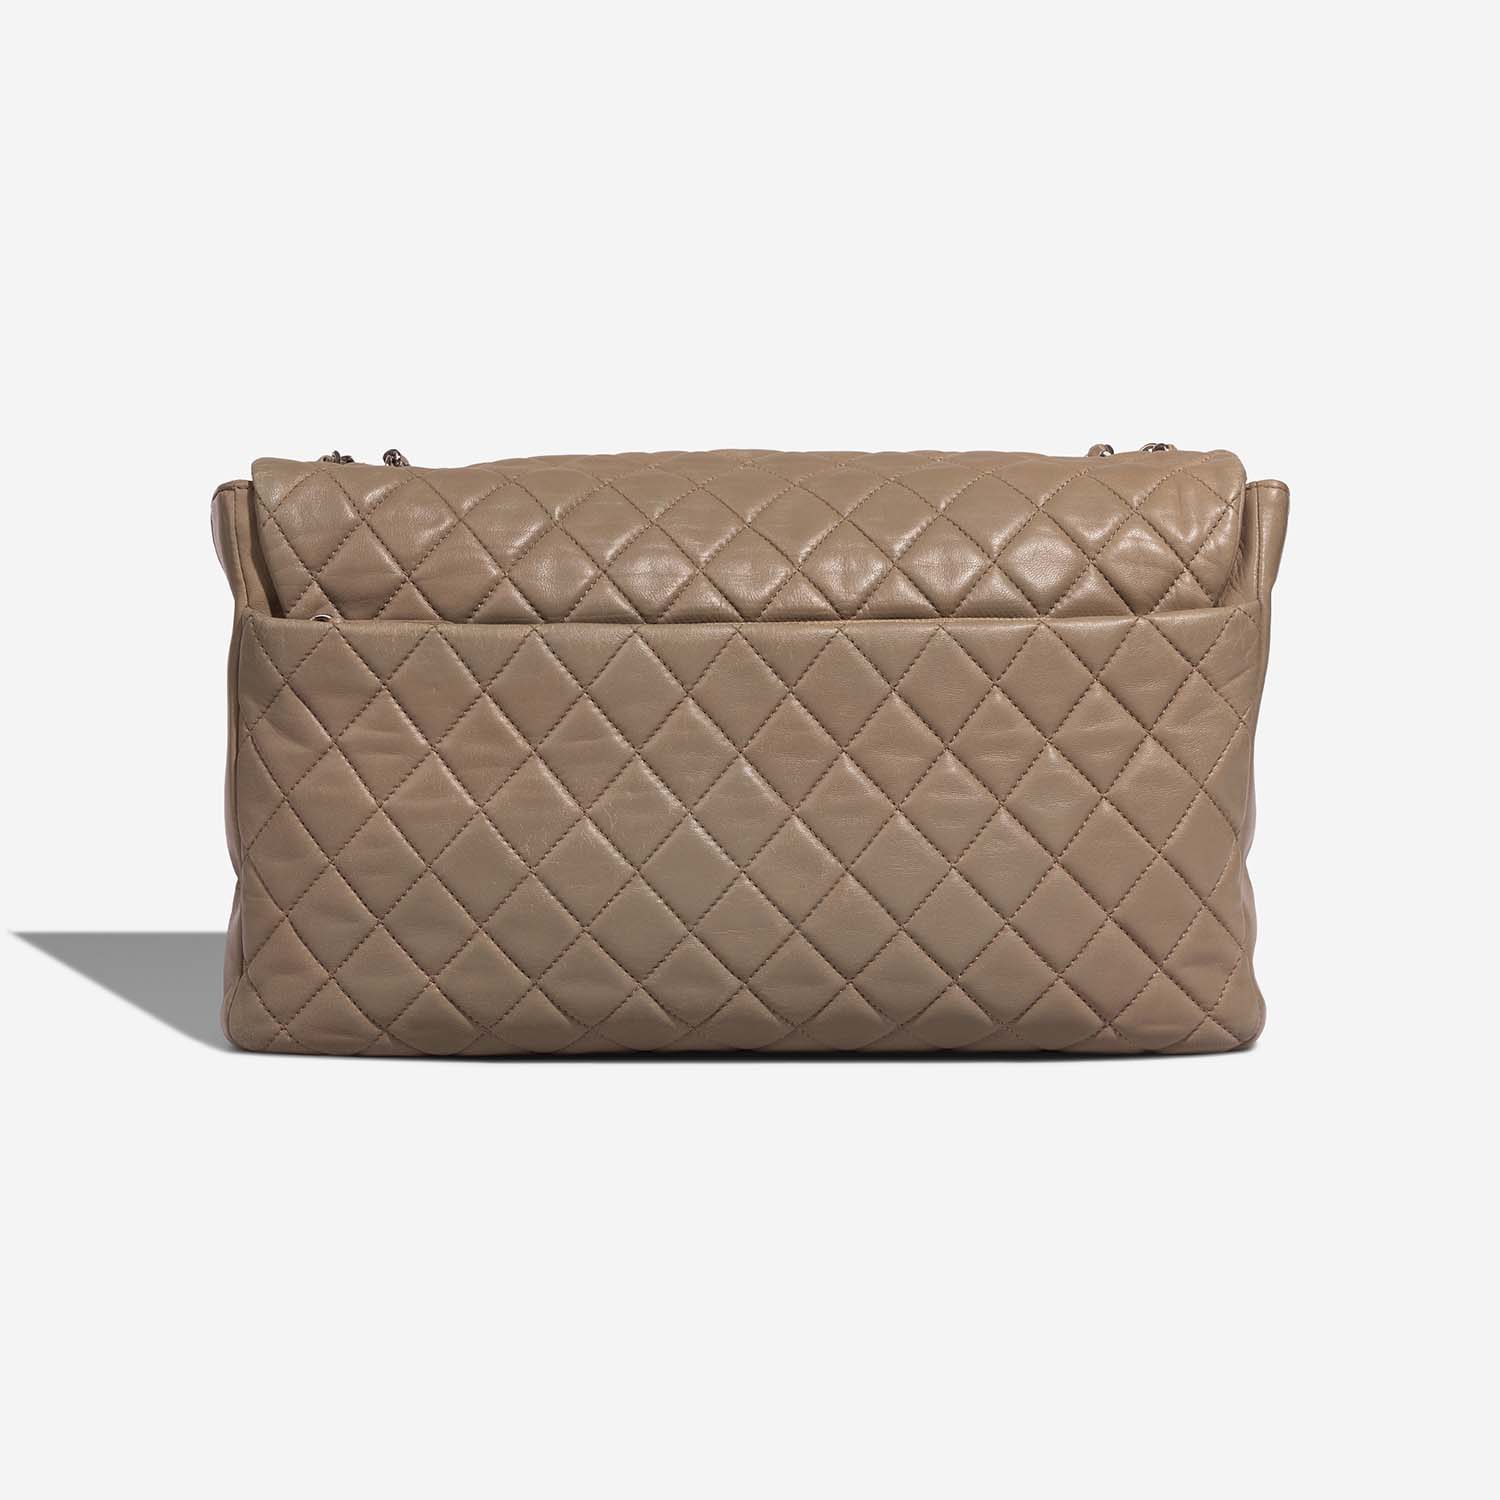 Chanel Timeless Maxi Beige 5B | Verkaufen Sie Ihre Designer-Tasche auf Saclab.com